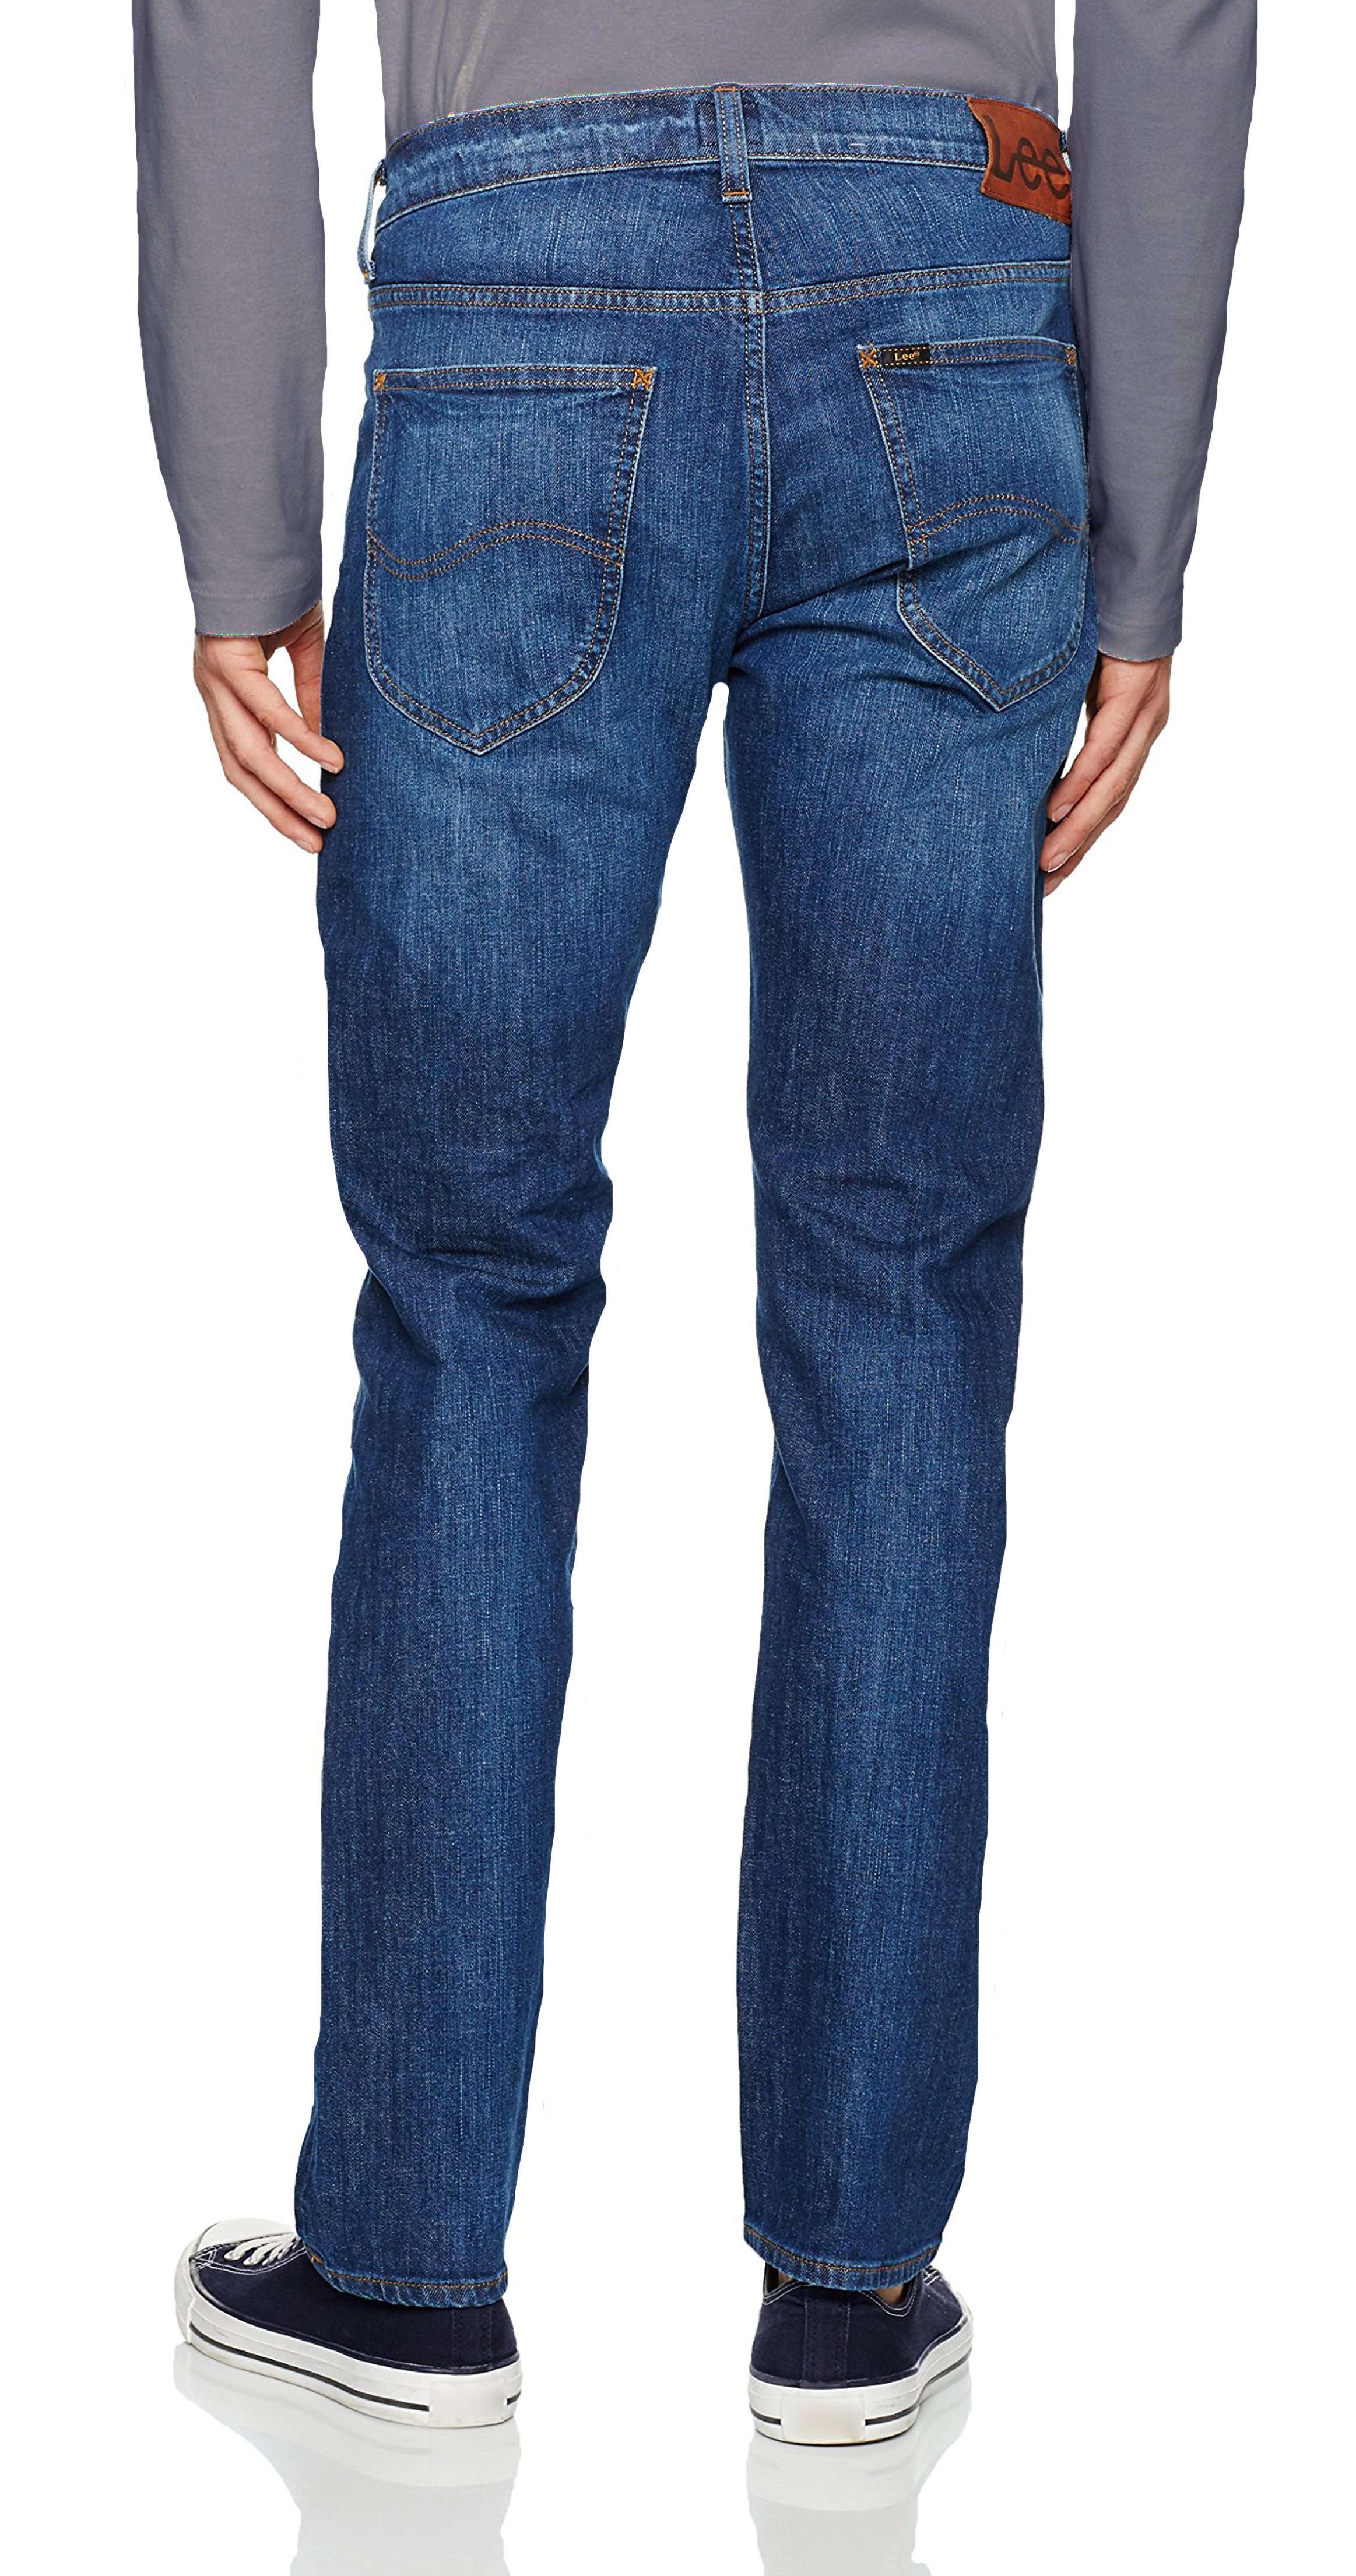 Lee Daren Slim Fit Jeans Mens Vintage After Dark Blue Straight Faded ...